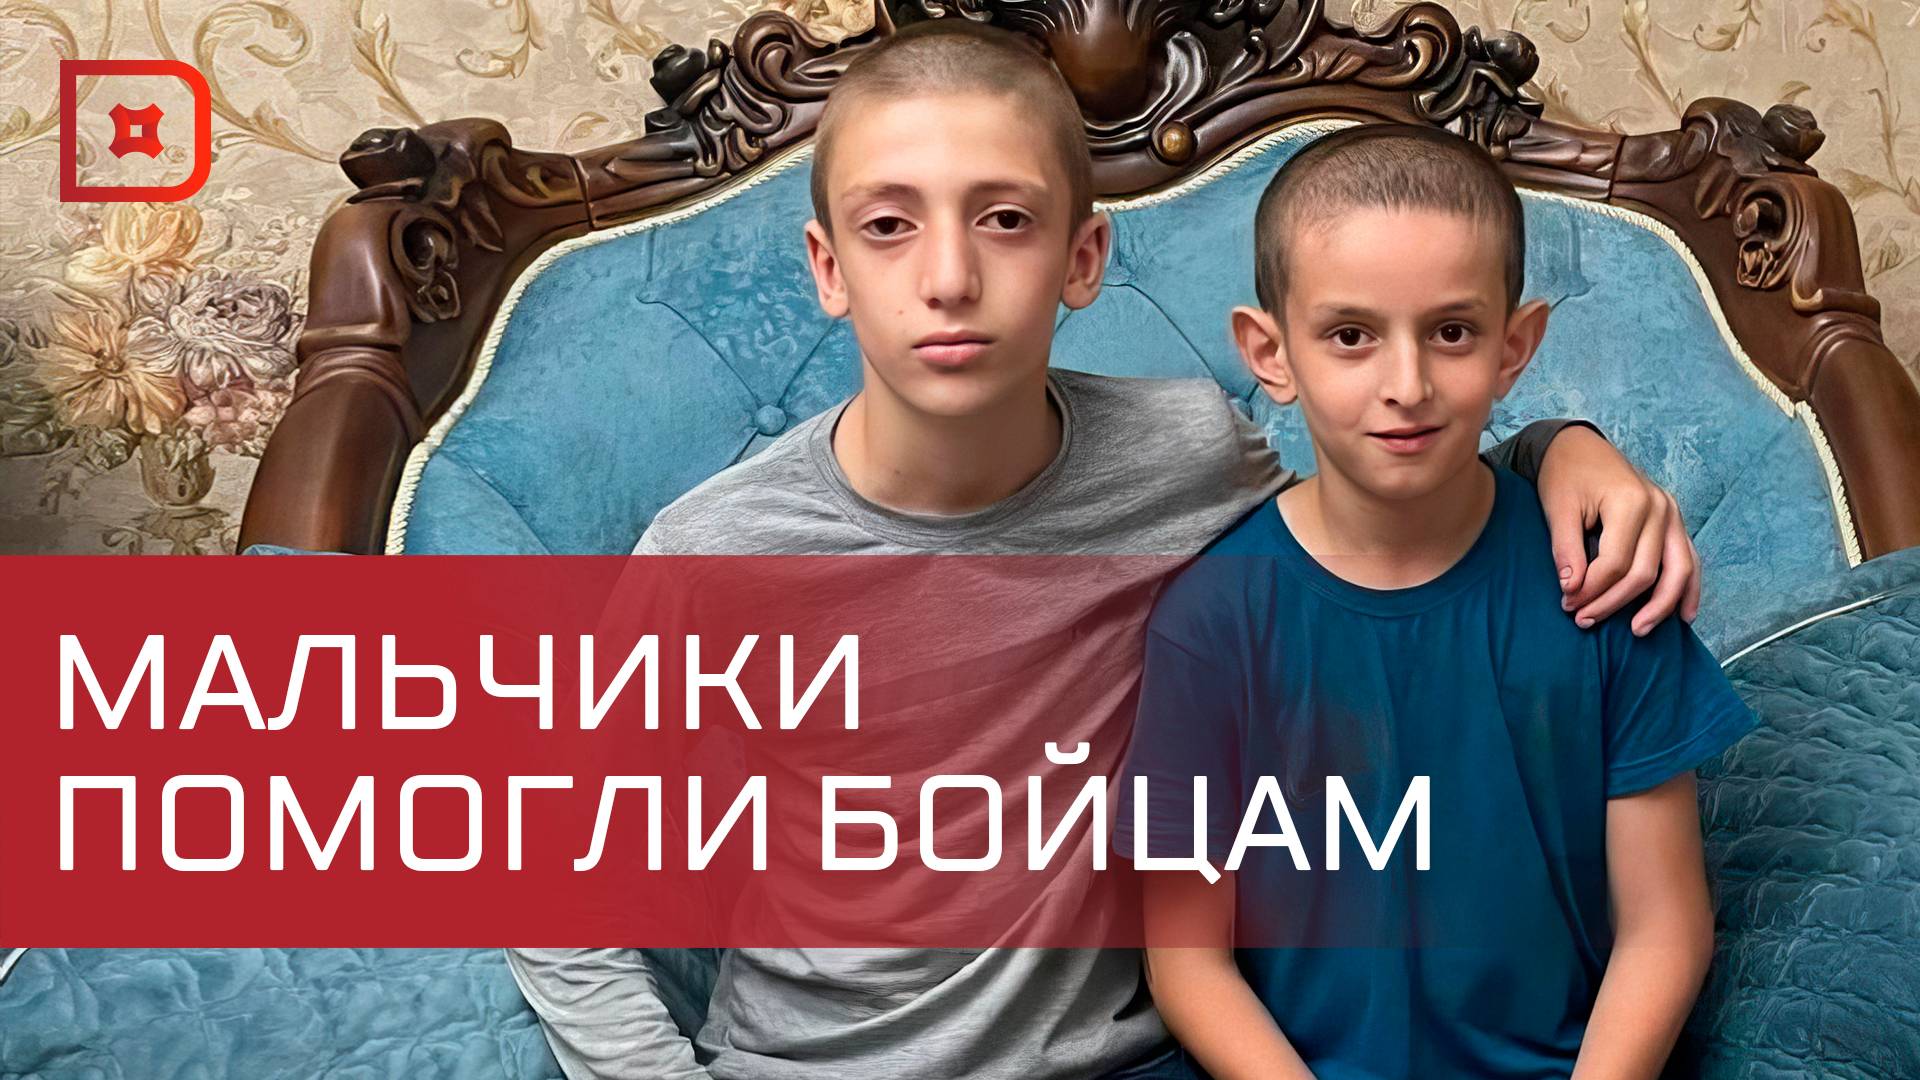 Дагестанские мальчишки помогали бойцам в борьбе с террористами